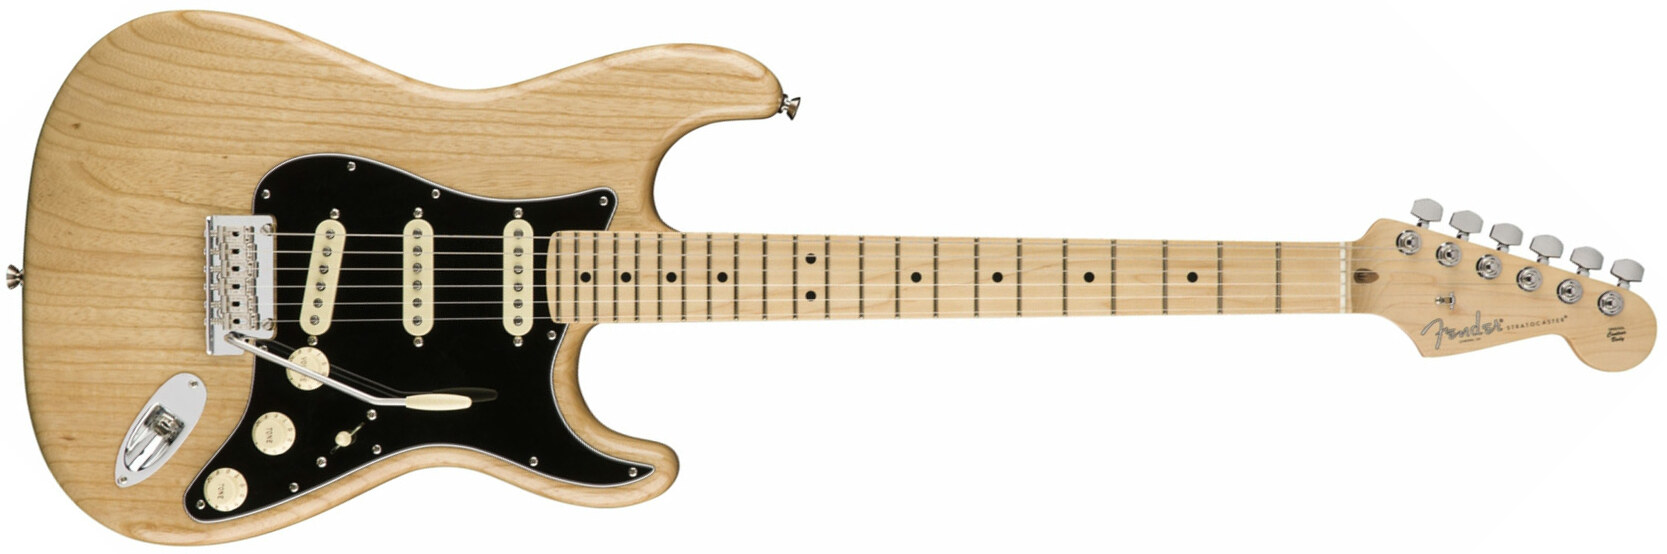 Fender Strat American Professional 3s Usa Mn - Natural - Elektrische gitaar in Str-vorm - Main picture